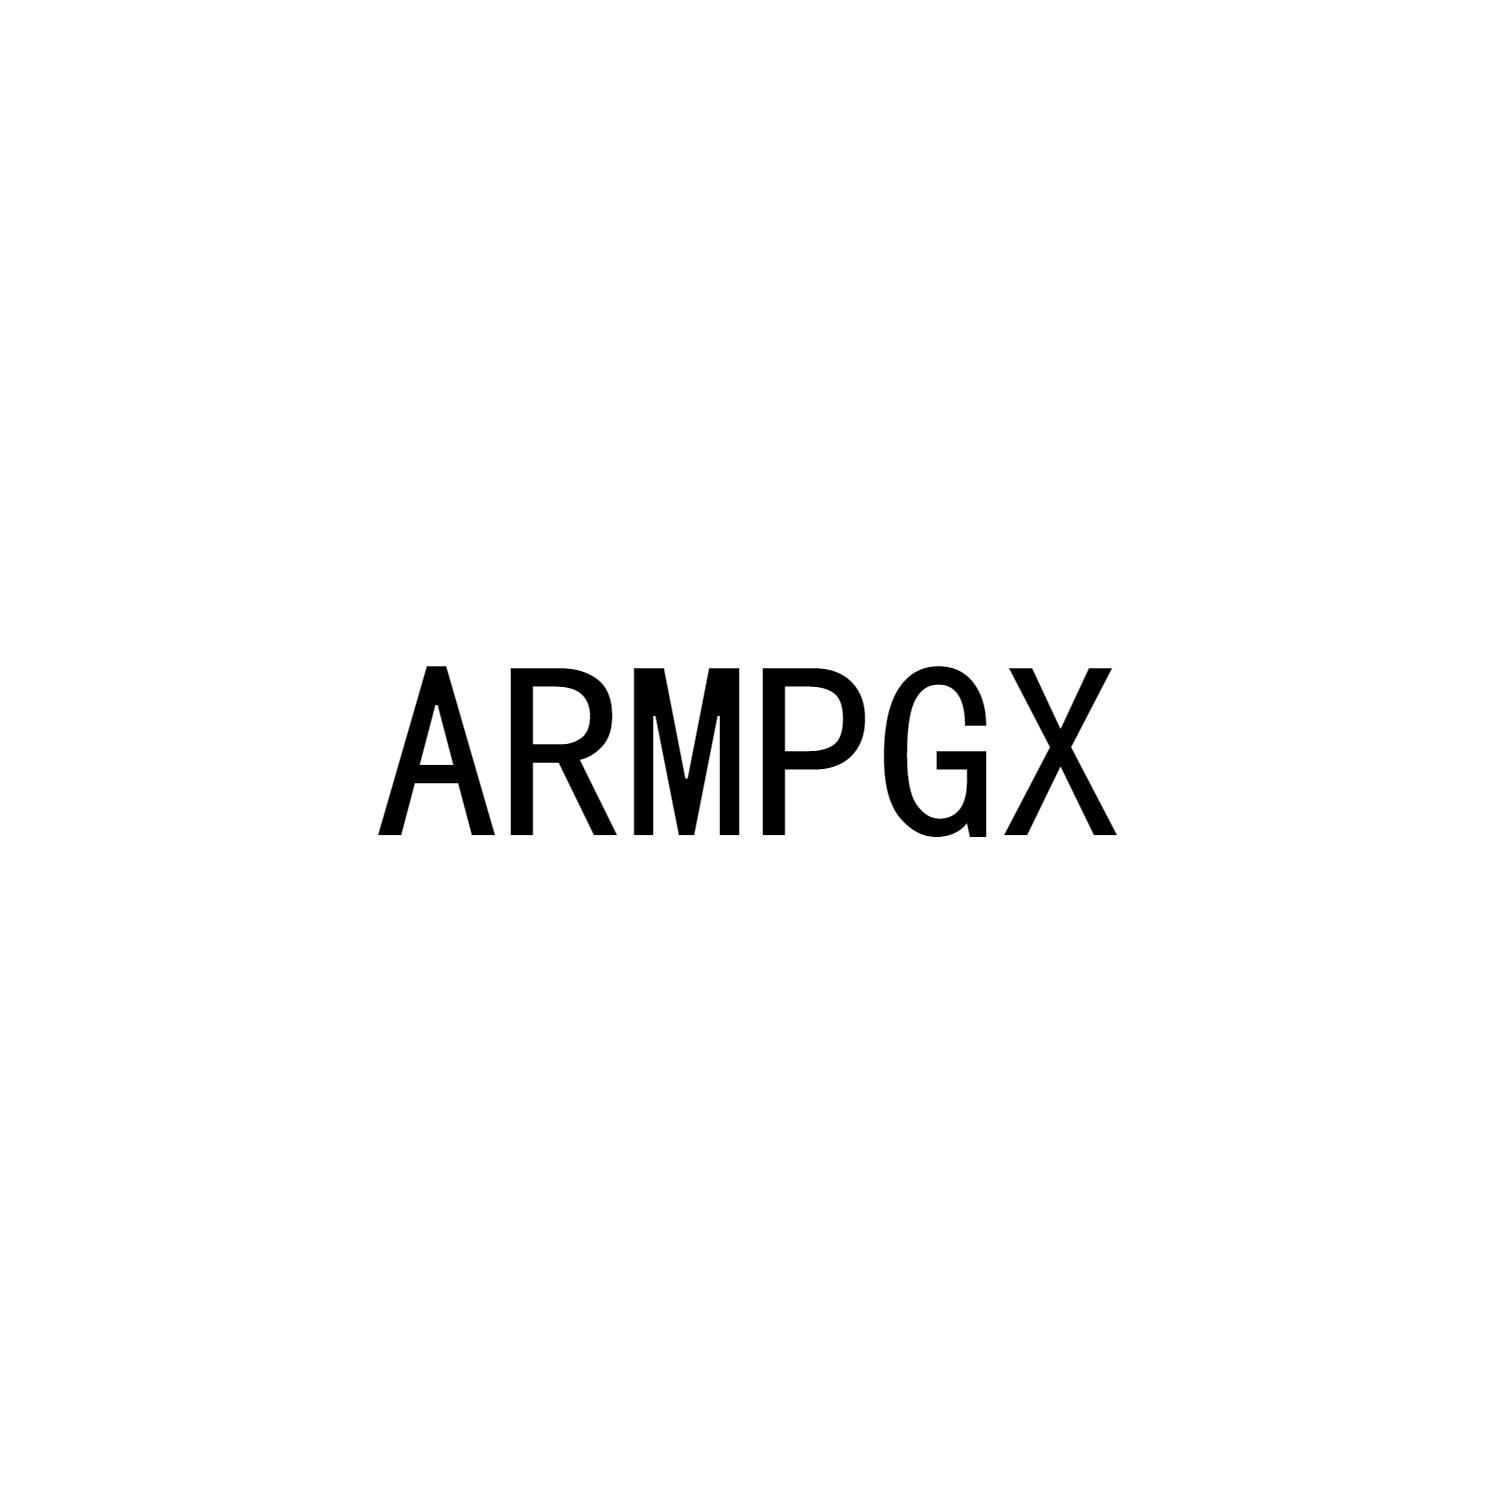 ARMPGX